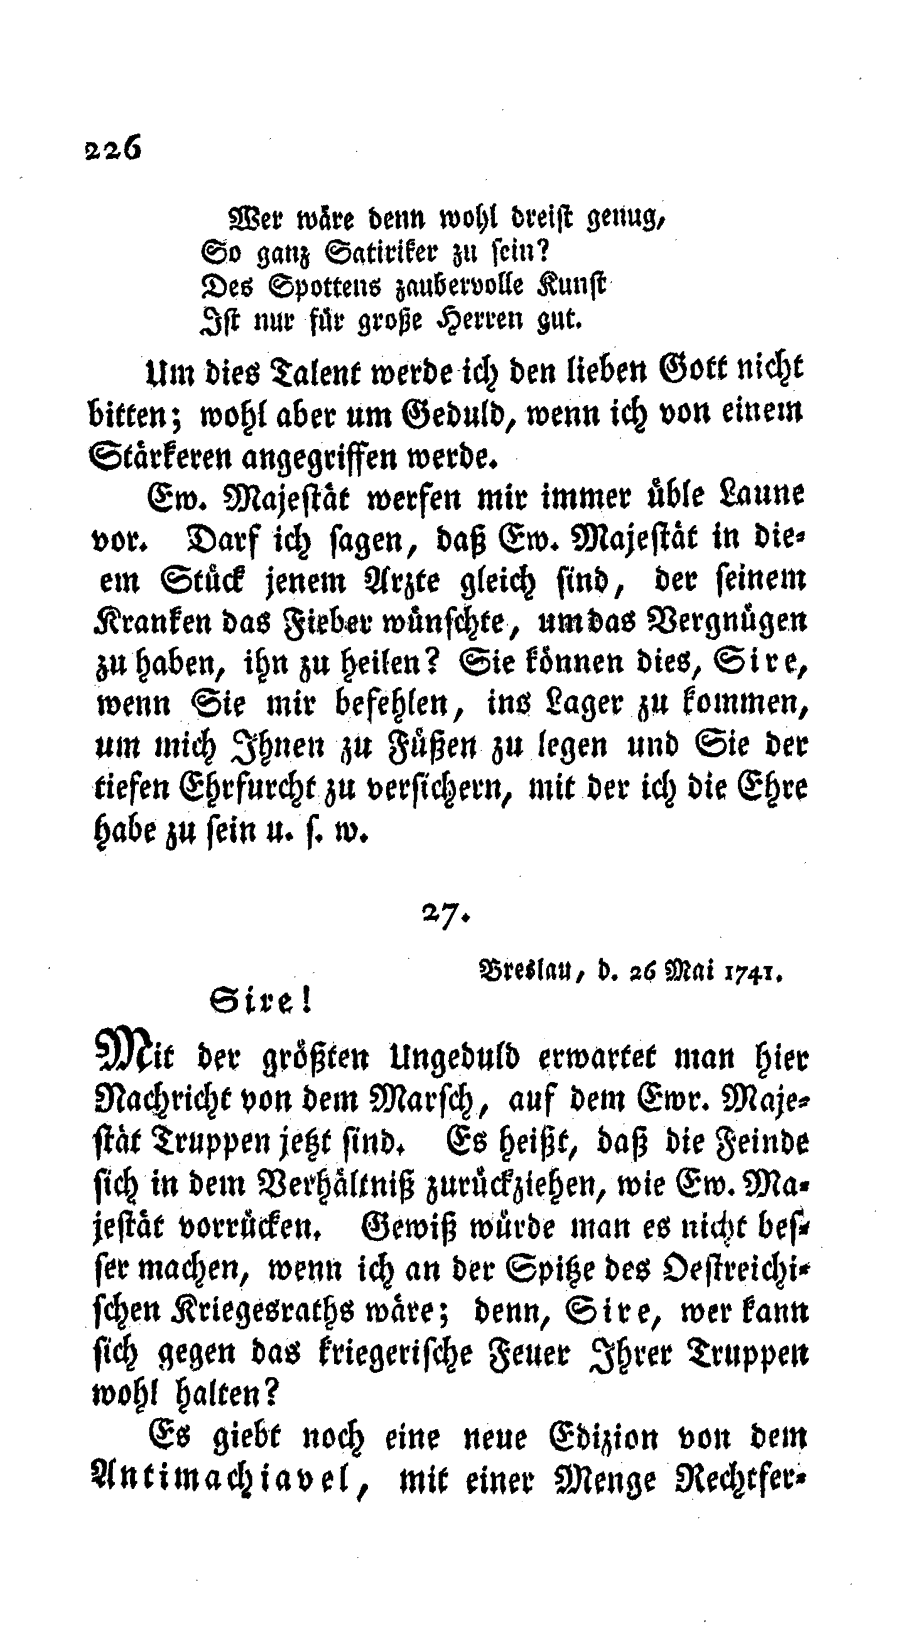 S. 226, Obj. 2